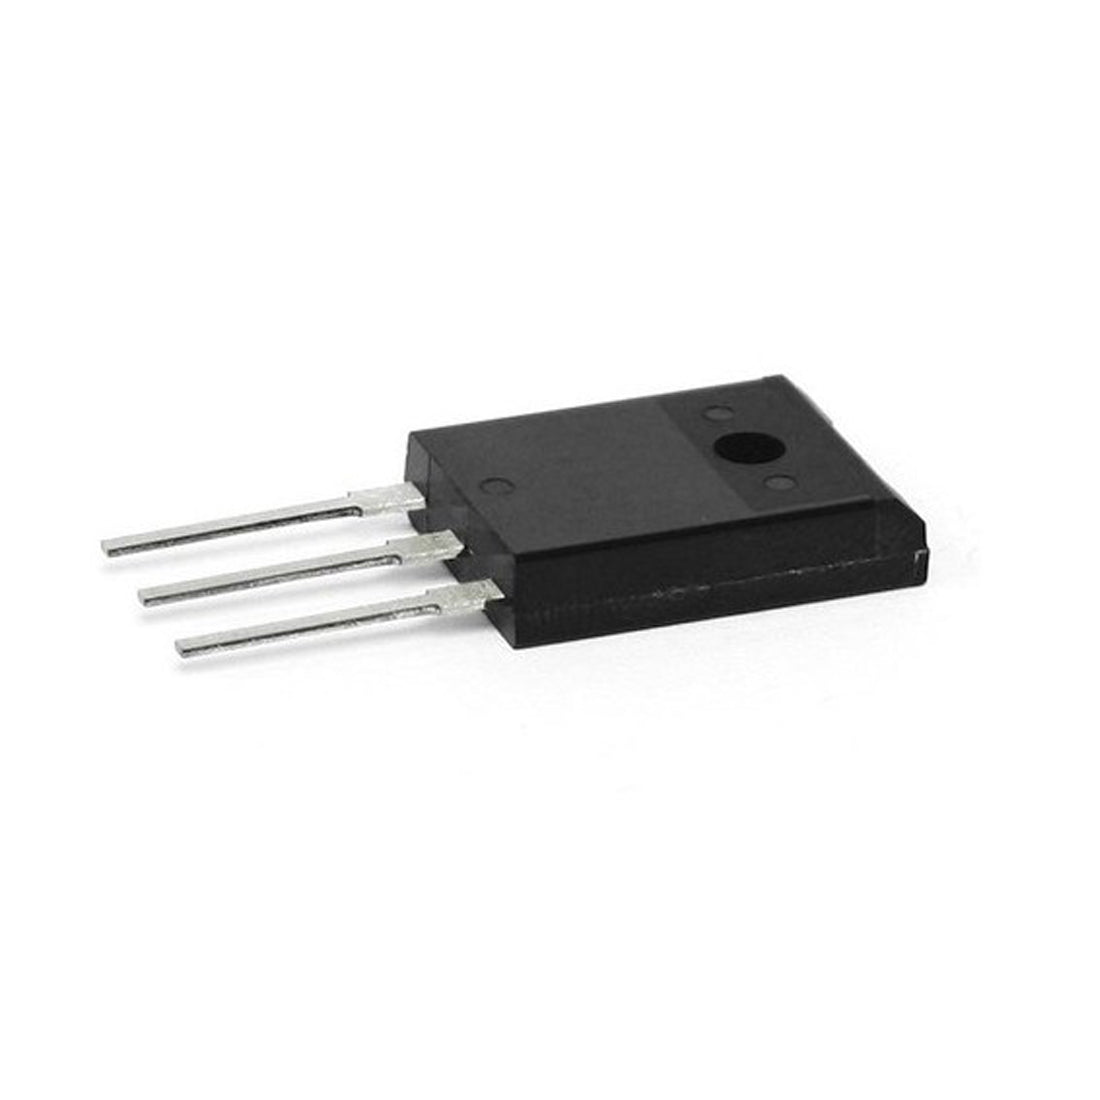 D1895 Componente elettronico, circuito integrato, transistor, 3 contatti